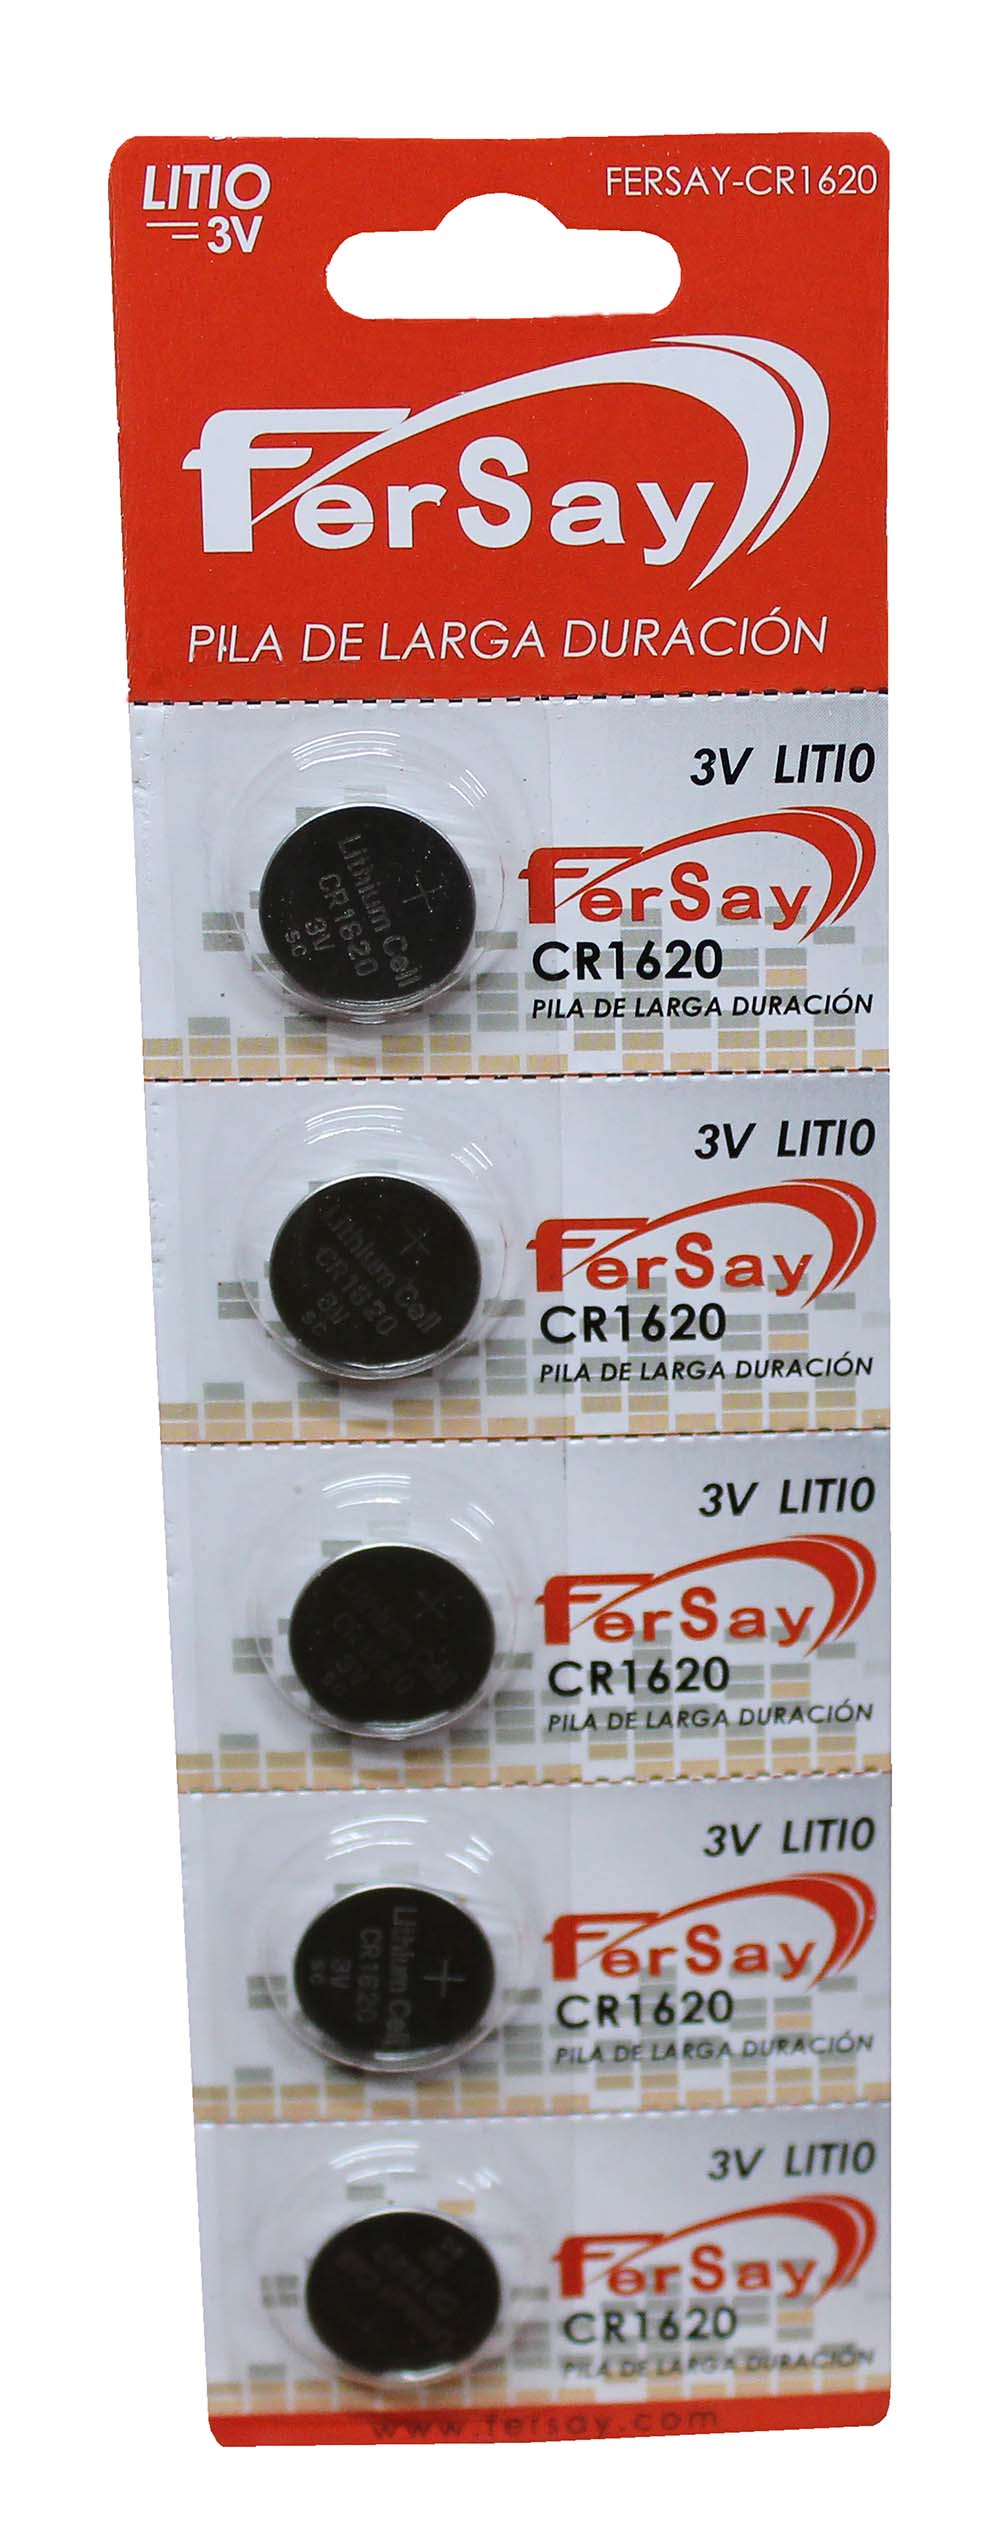 Pila botón litio formato CR1620 Fersay, 5 unidades. - FERSAYCR1620 - FERSAY